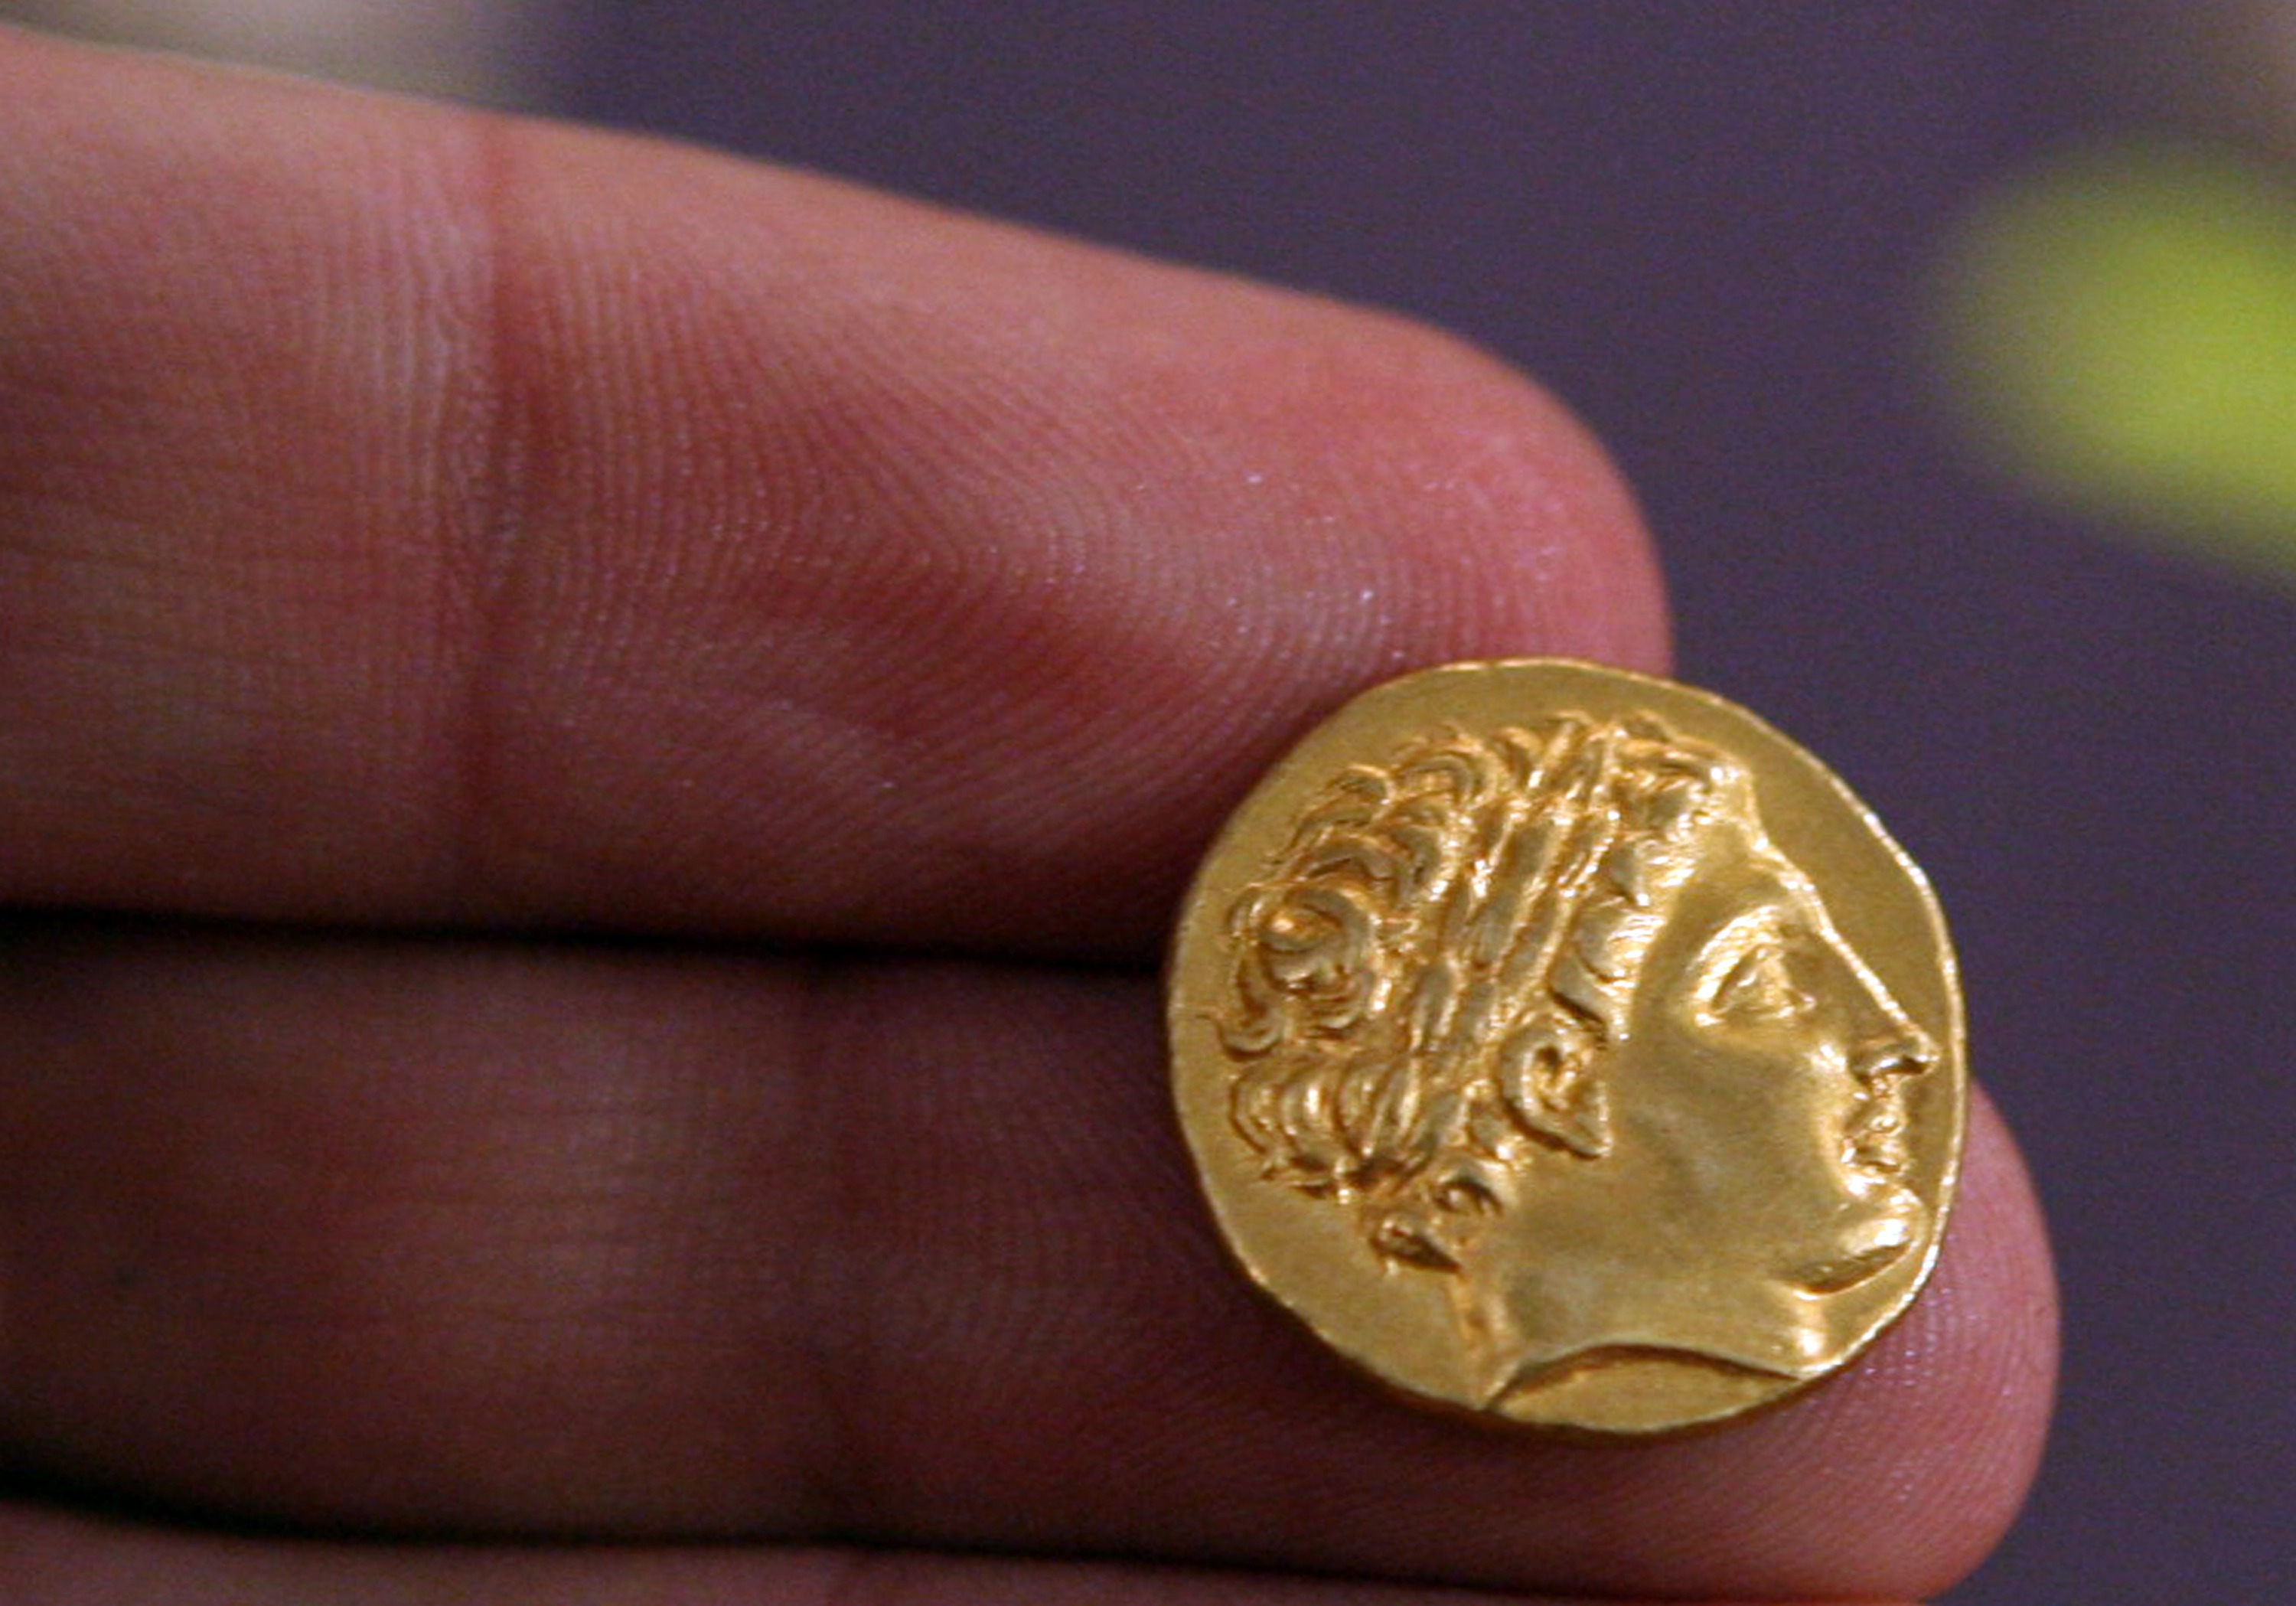 Alexanders profil, här på ett gammalt mynt från Bulgarien.